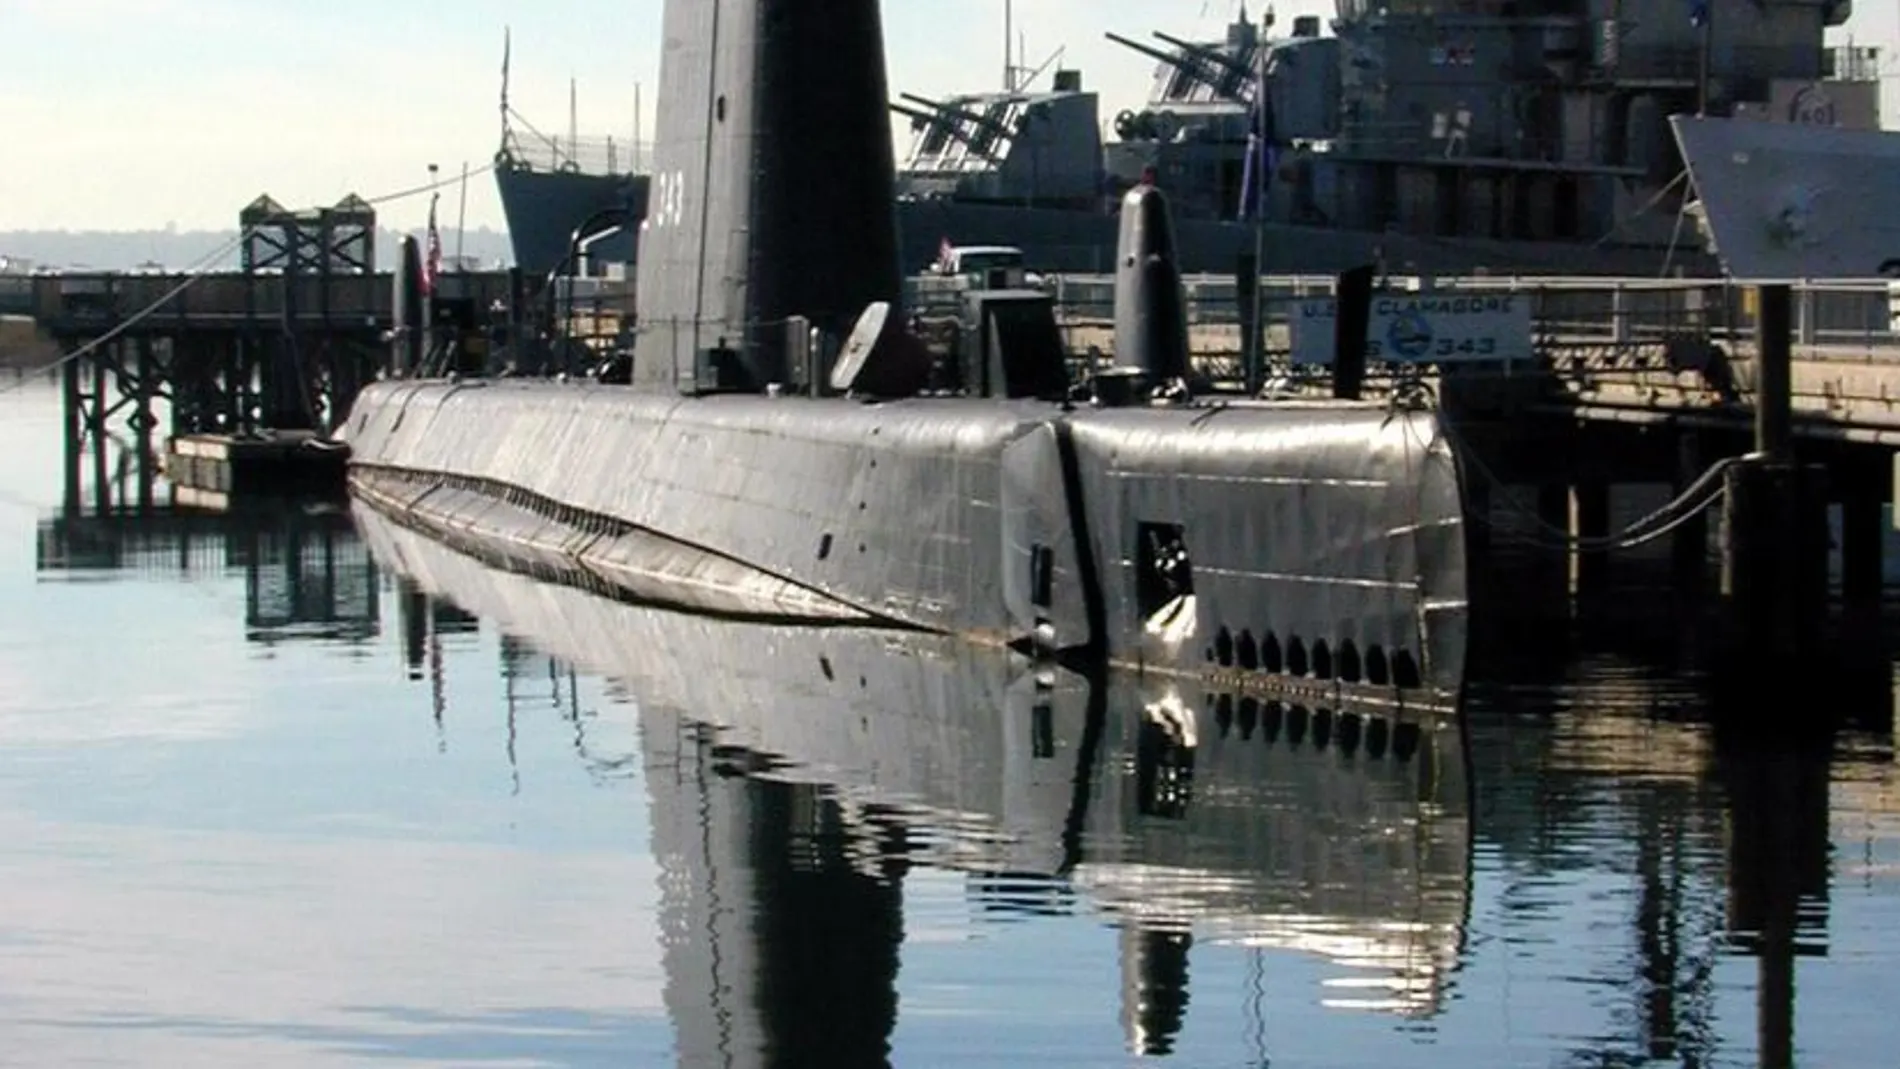 Fotografía de archivo del submarino USS Clagamore, que con 71 años de antigüedad formó parte de la flota de la Armada estadounidense desde 1945 hasta 1975, y ahora está más cerca de salvarse del desguace y de recibir una nueva misión que nada tiene de bélica